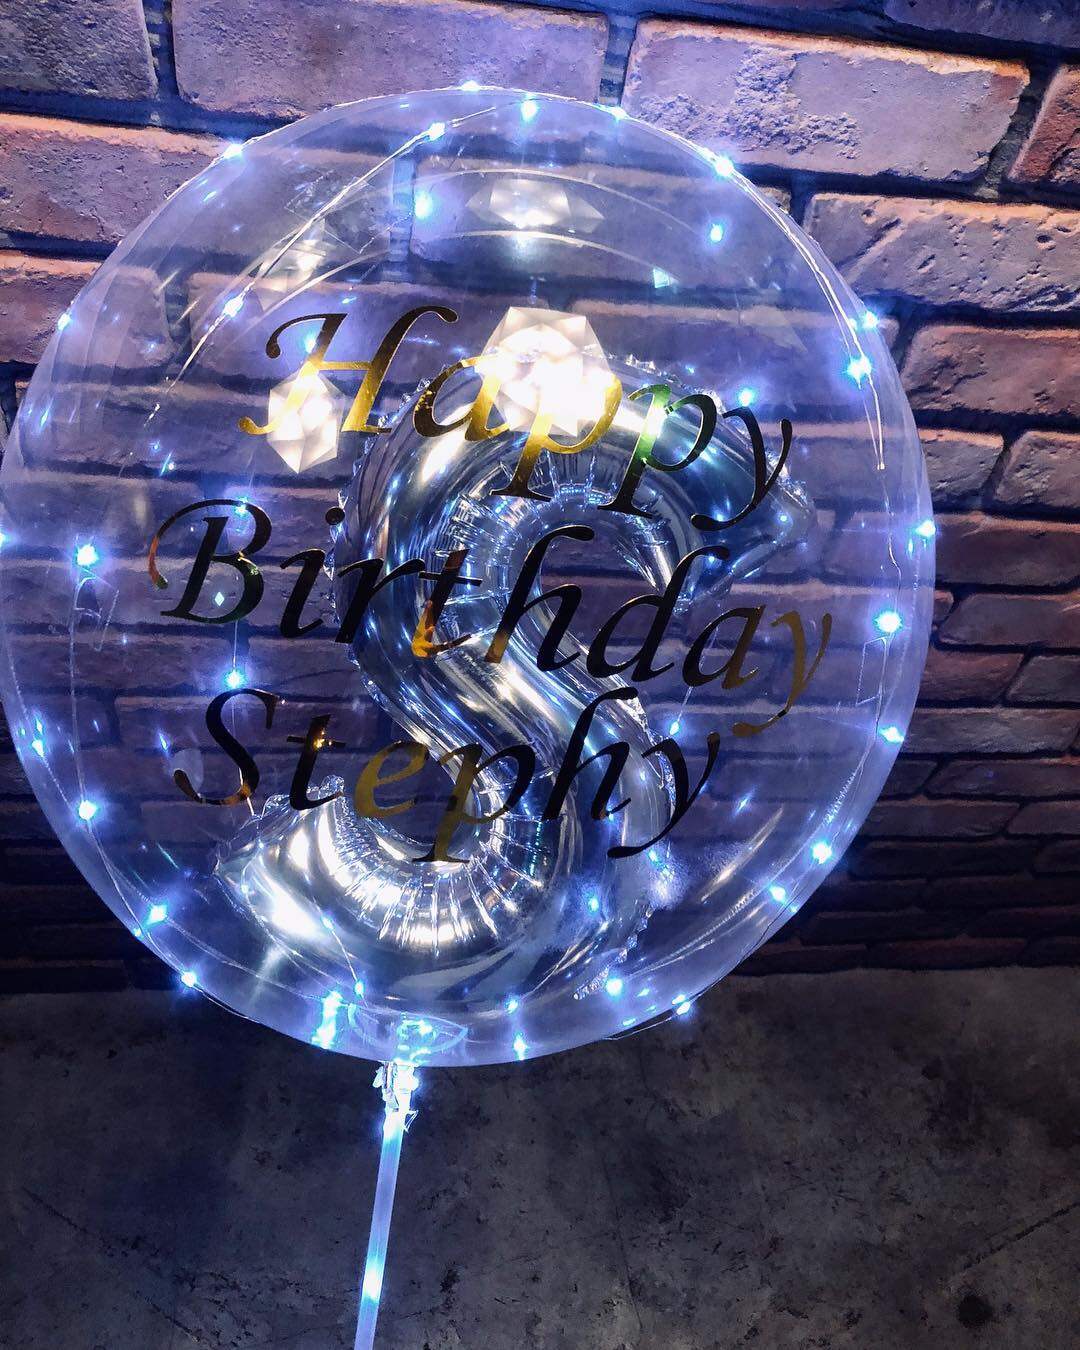 而邱勝翊王子就上載了一個印有「Happy Birthday Stephy」字句的透明氣球照片